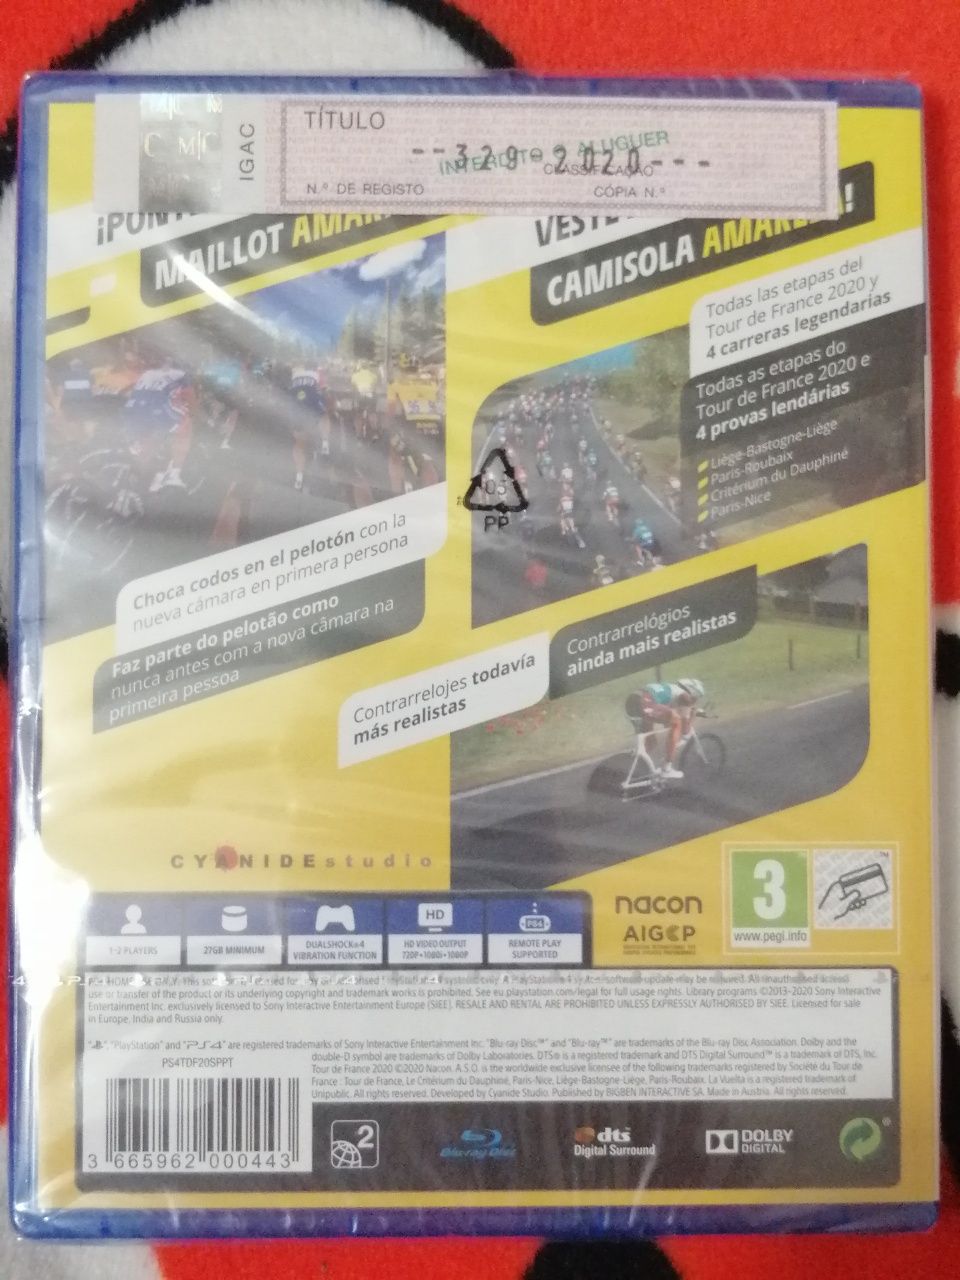 Jogos PS4 novos e selados com preços diversos desde Corroios • OLX  Portugal